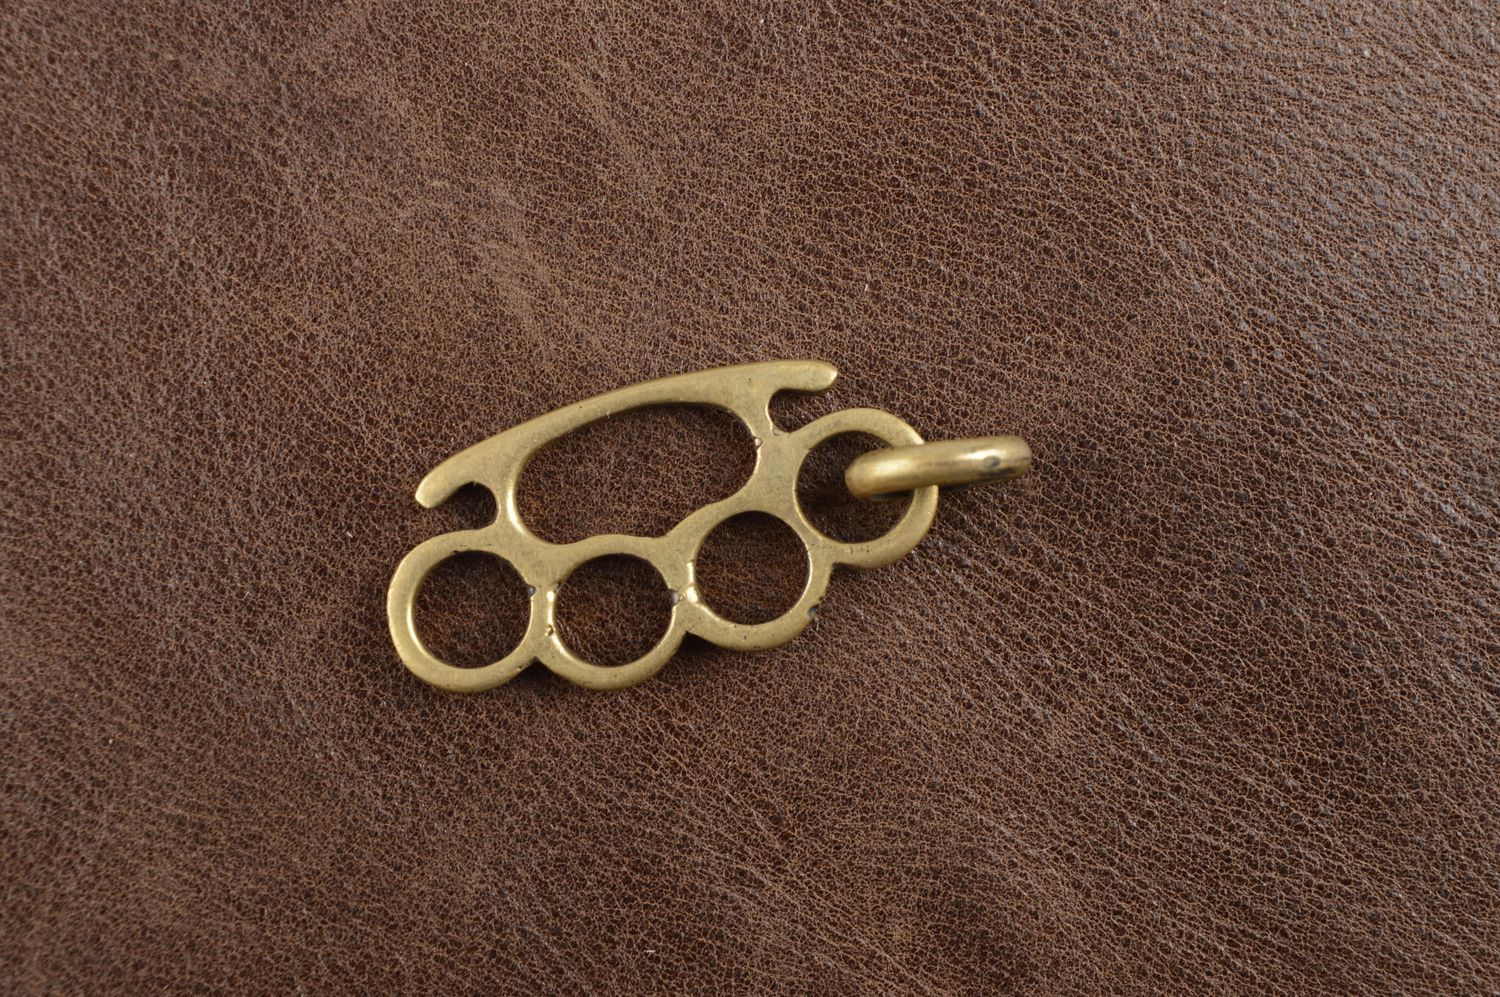 Handmade accessories bronze necklace metal pendant bronze jewelry unusual gift photo 1